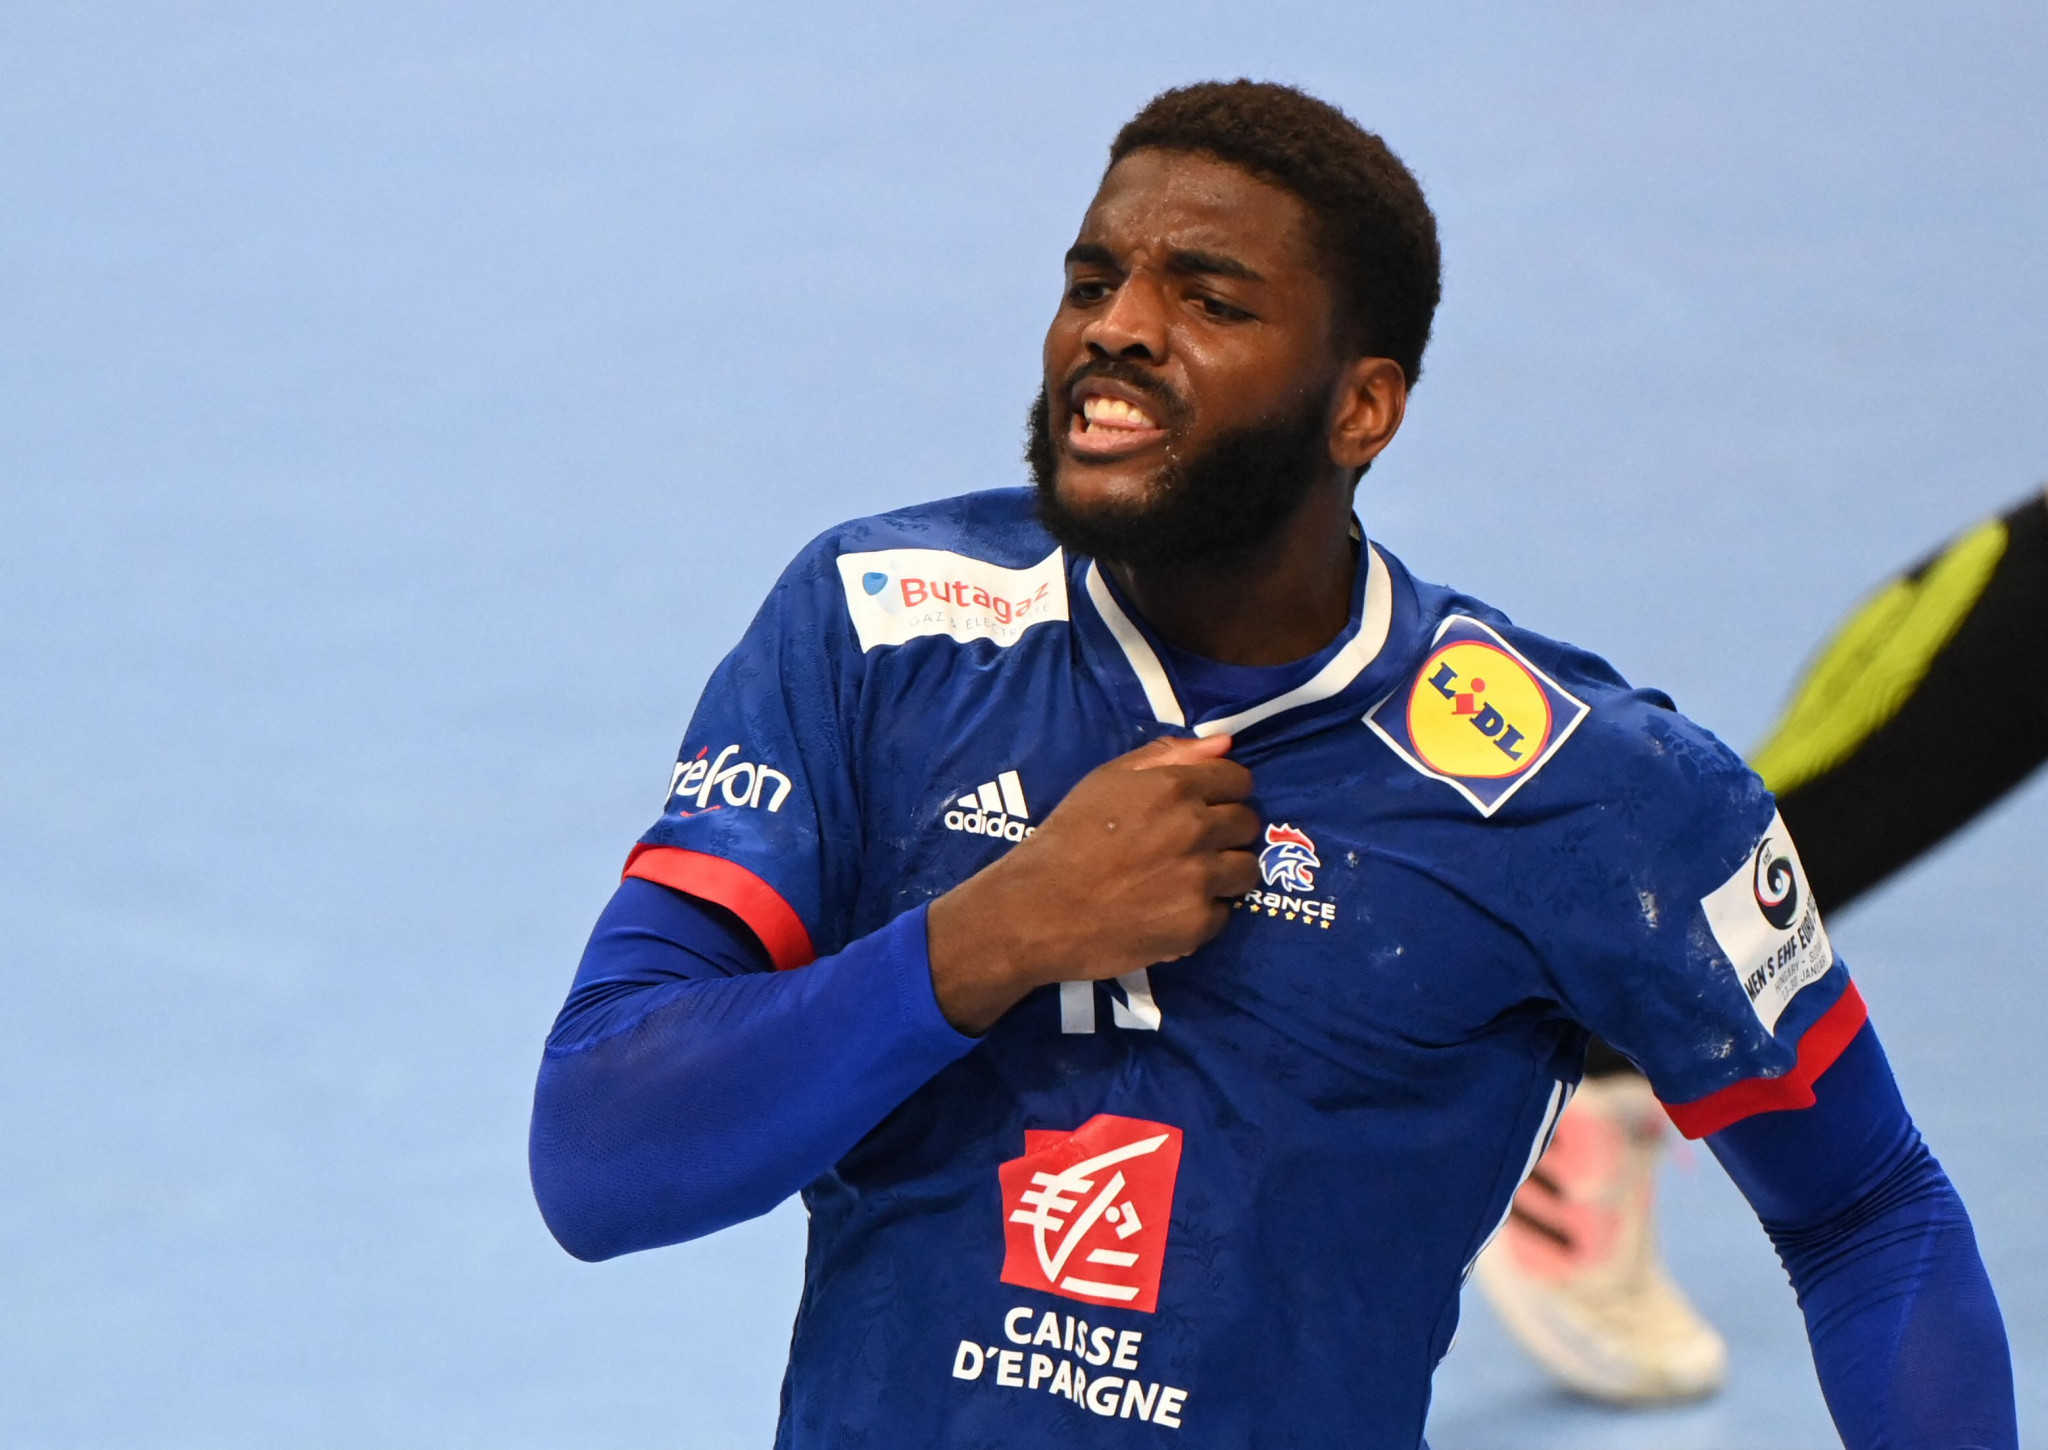 France reach European Men's Handball Championship semi-finals with comeback win